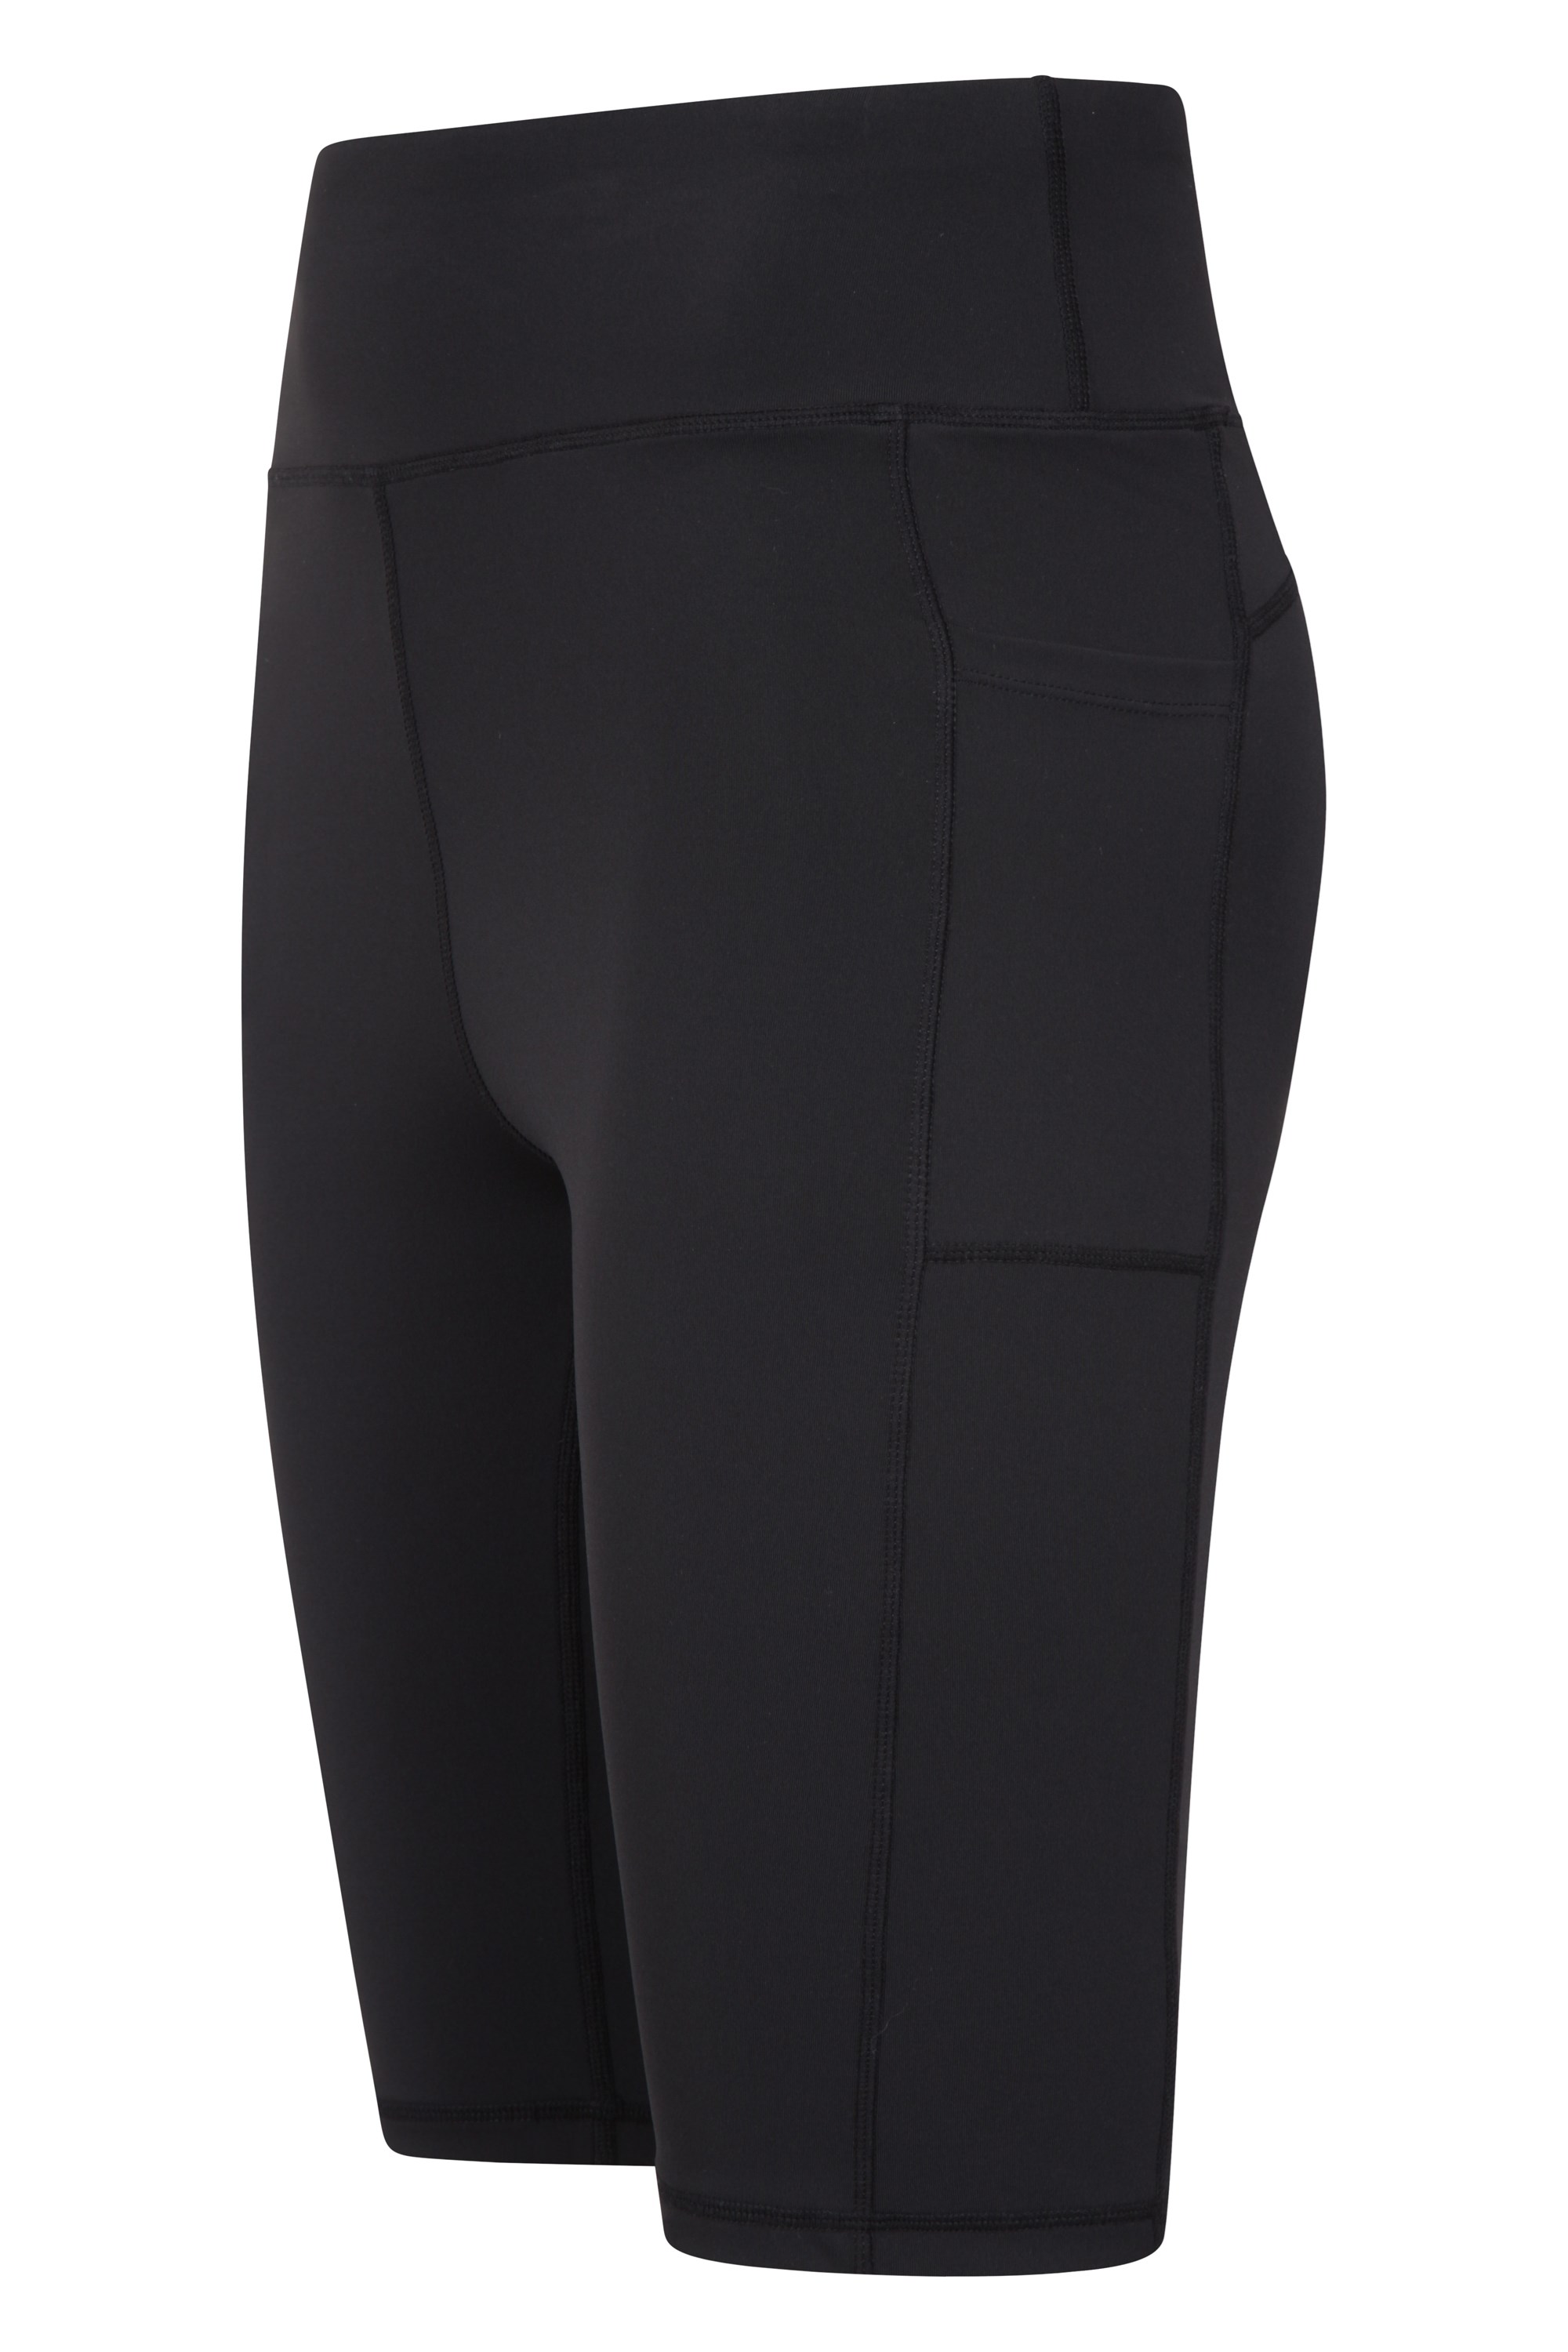 Puma BMW MMS Street legging shorts in black – Lylystyle360